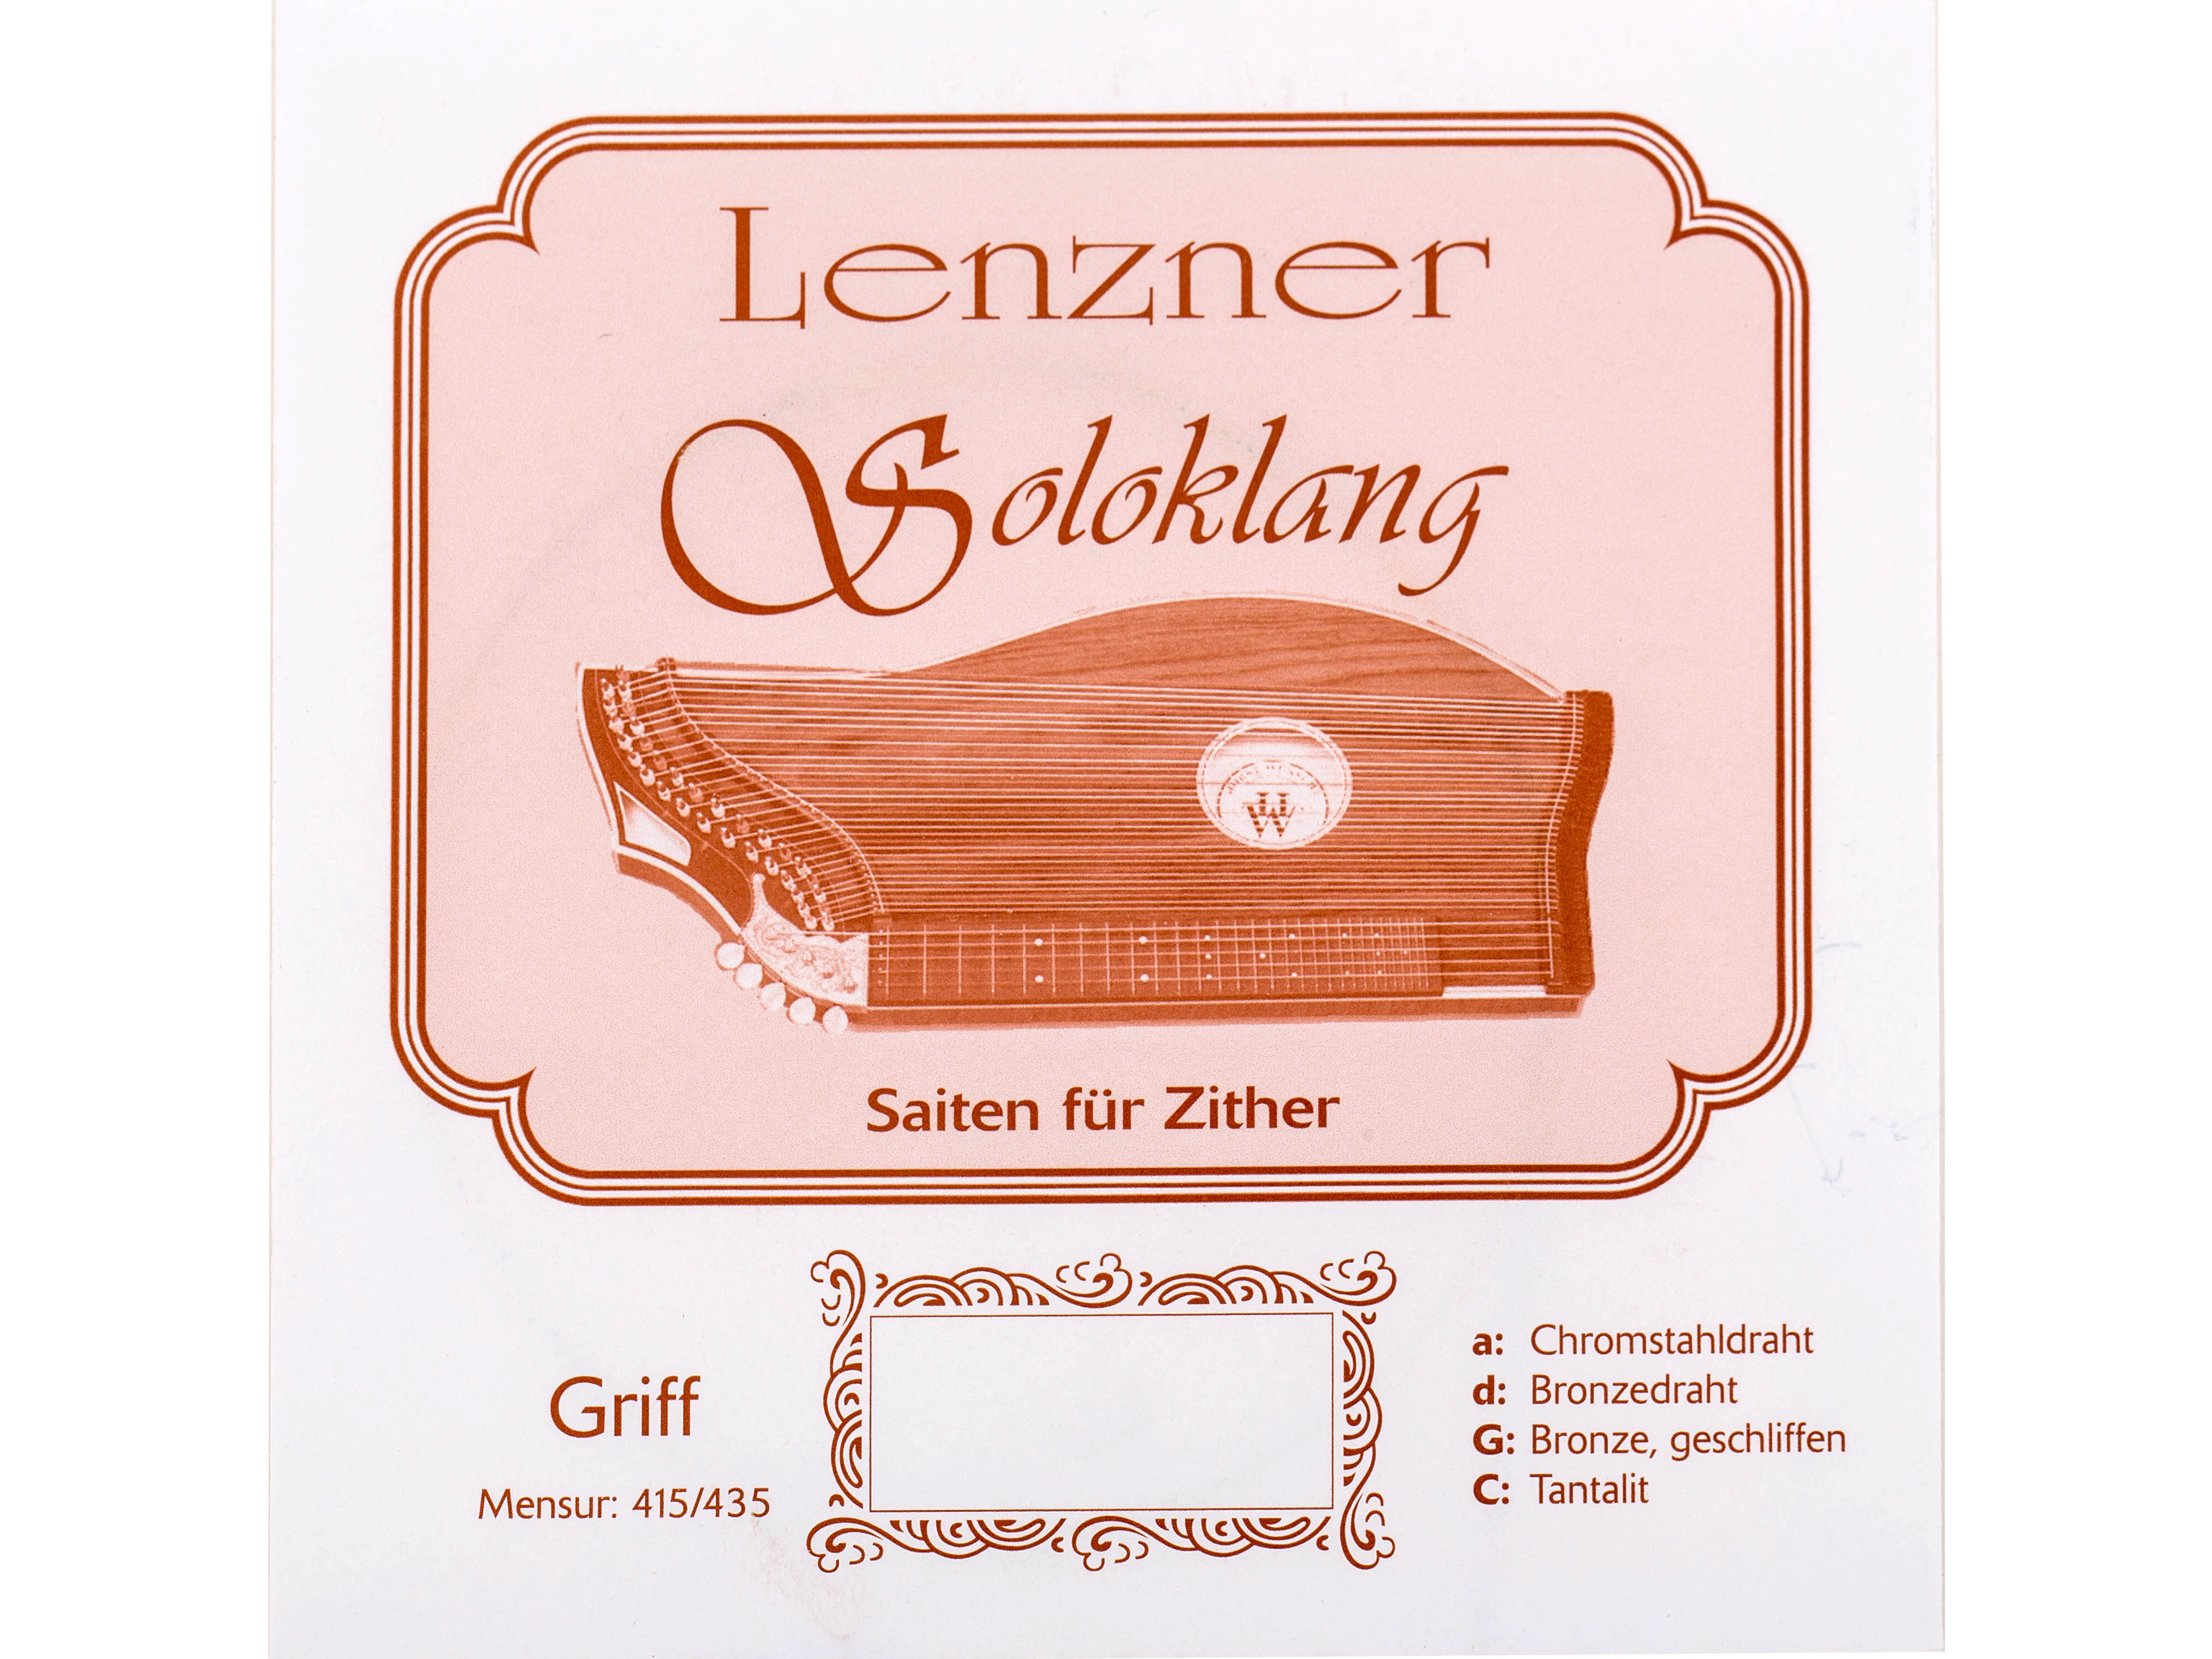 Lenzner 5514 C Zithersaite Soloklang Griffbrett